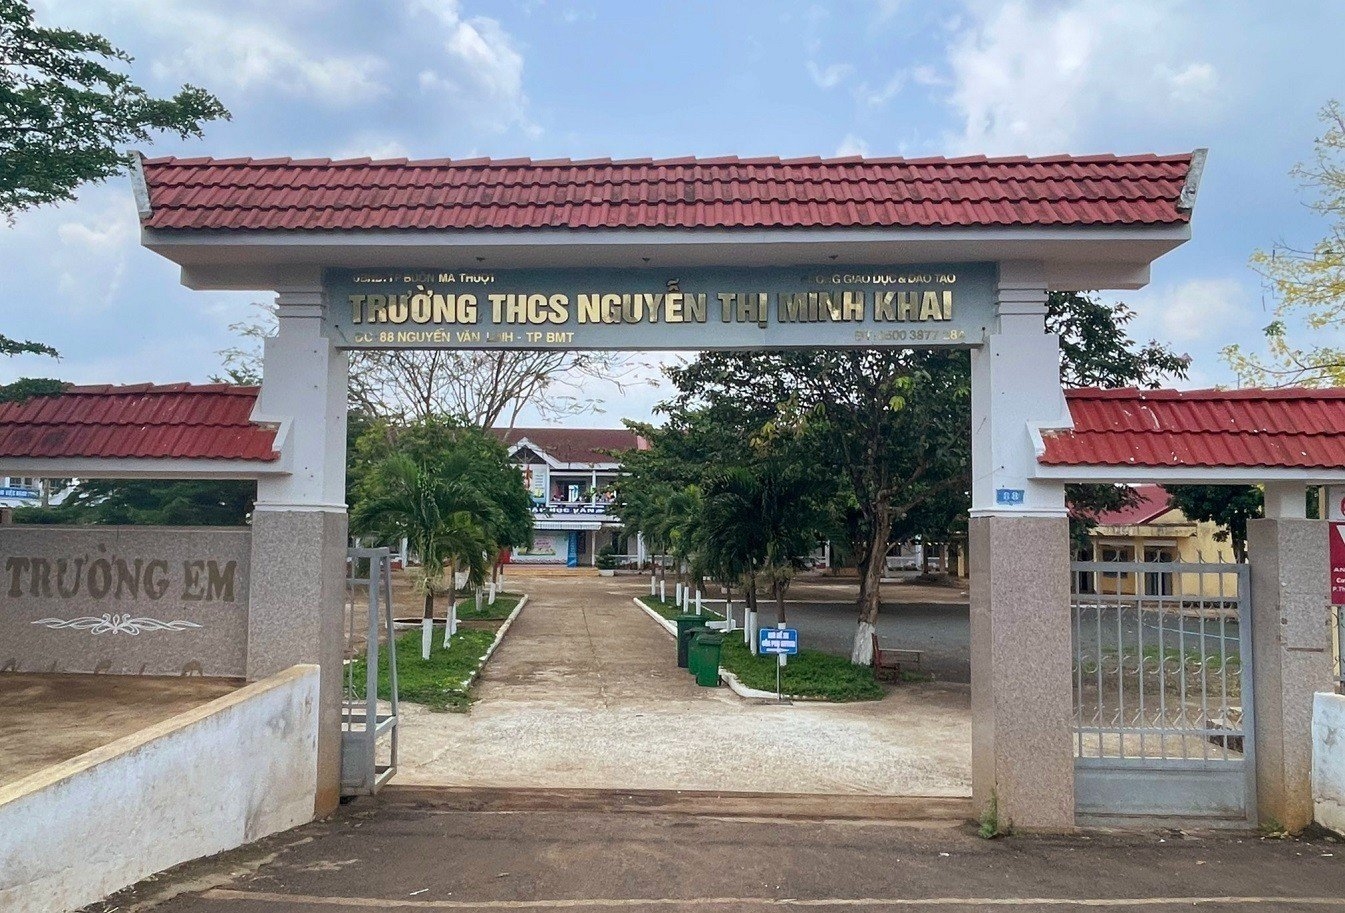 Trường THCS Nguyễn Thị Minh Khai, nơi xảy ra vụ việc cô giáo tát học sinh